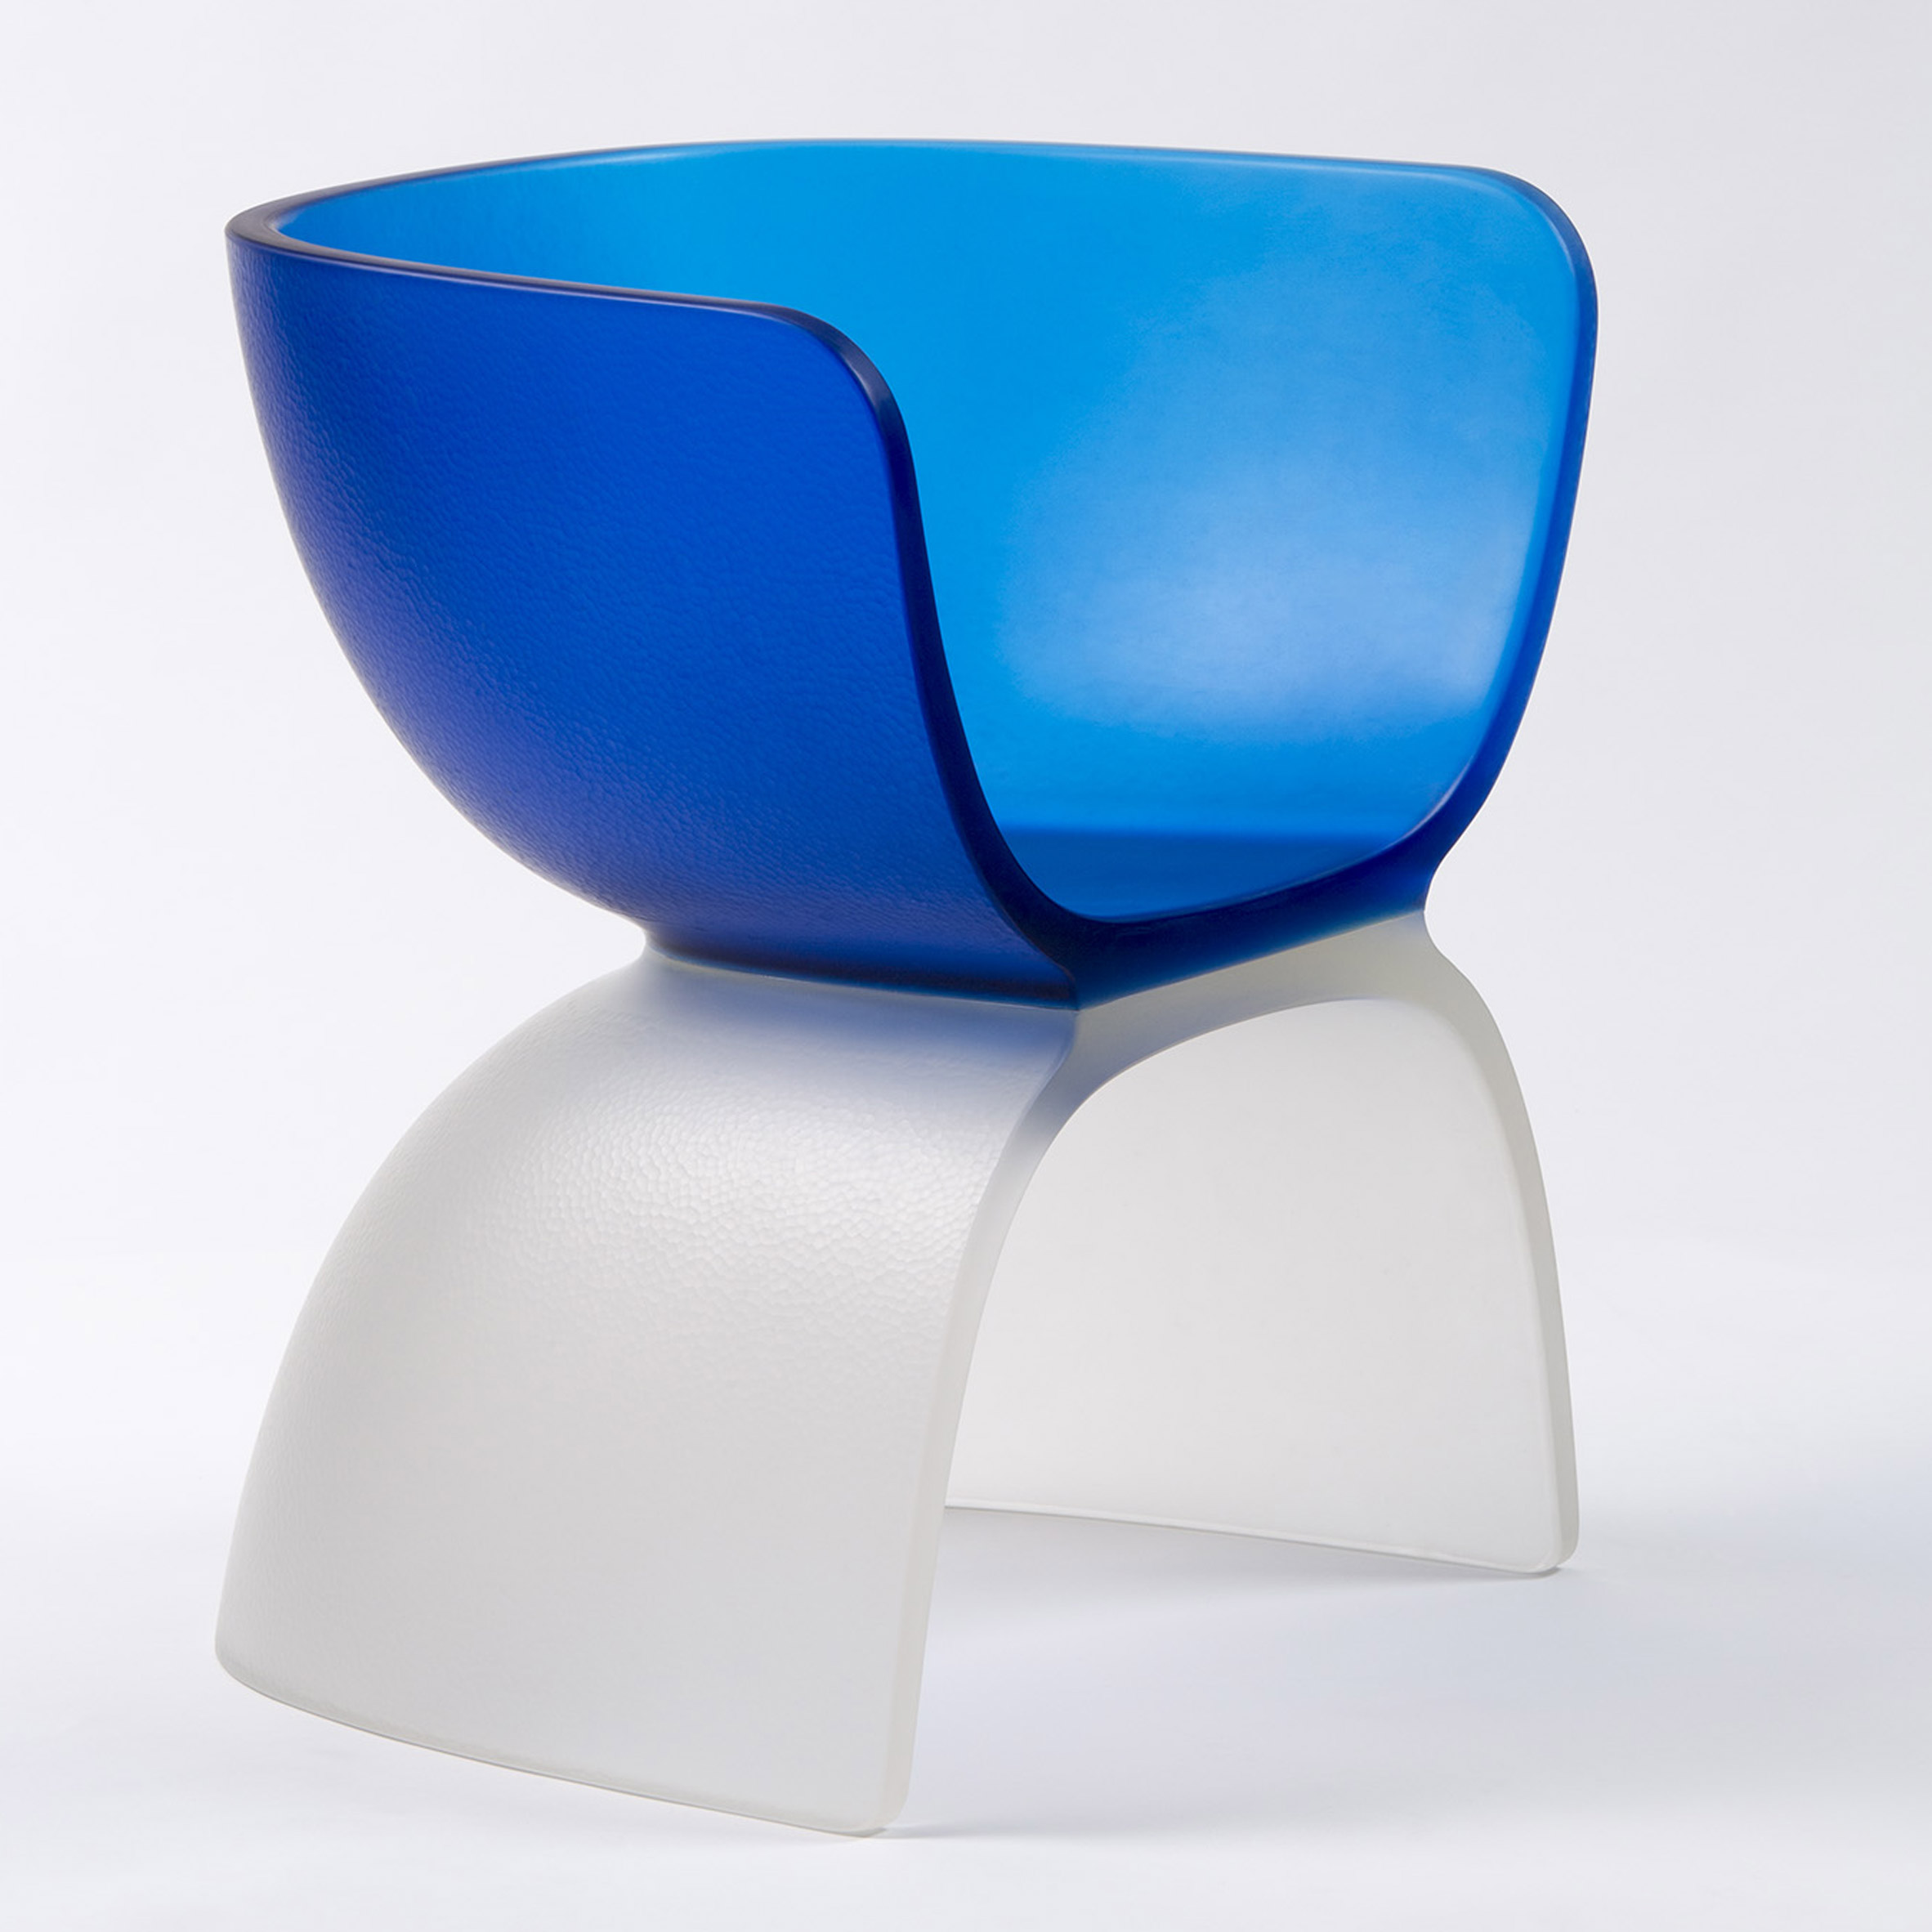 Cloisonné Blue Desk, Marc Newson Exhibition